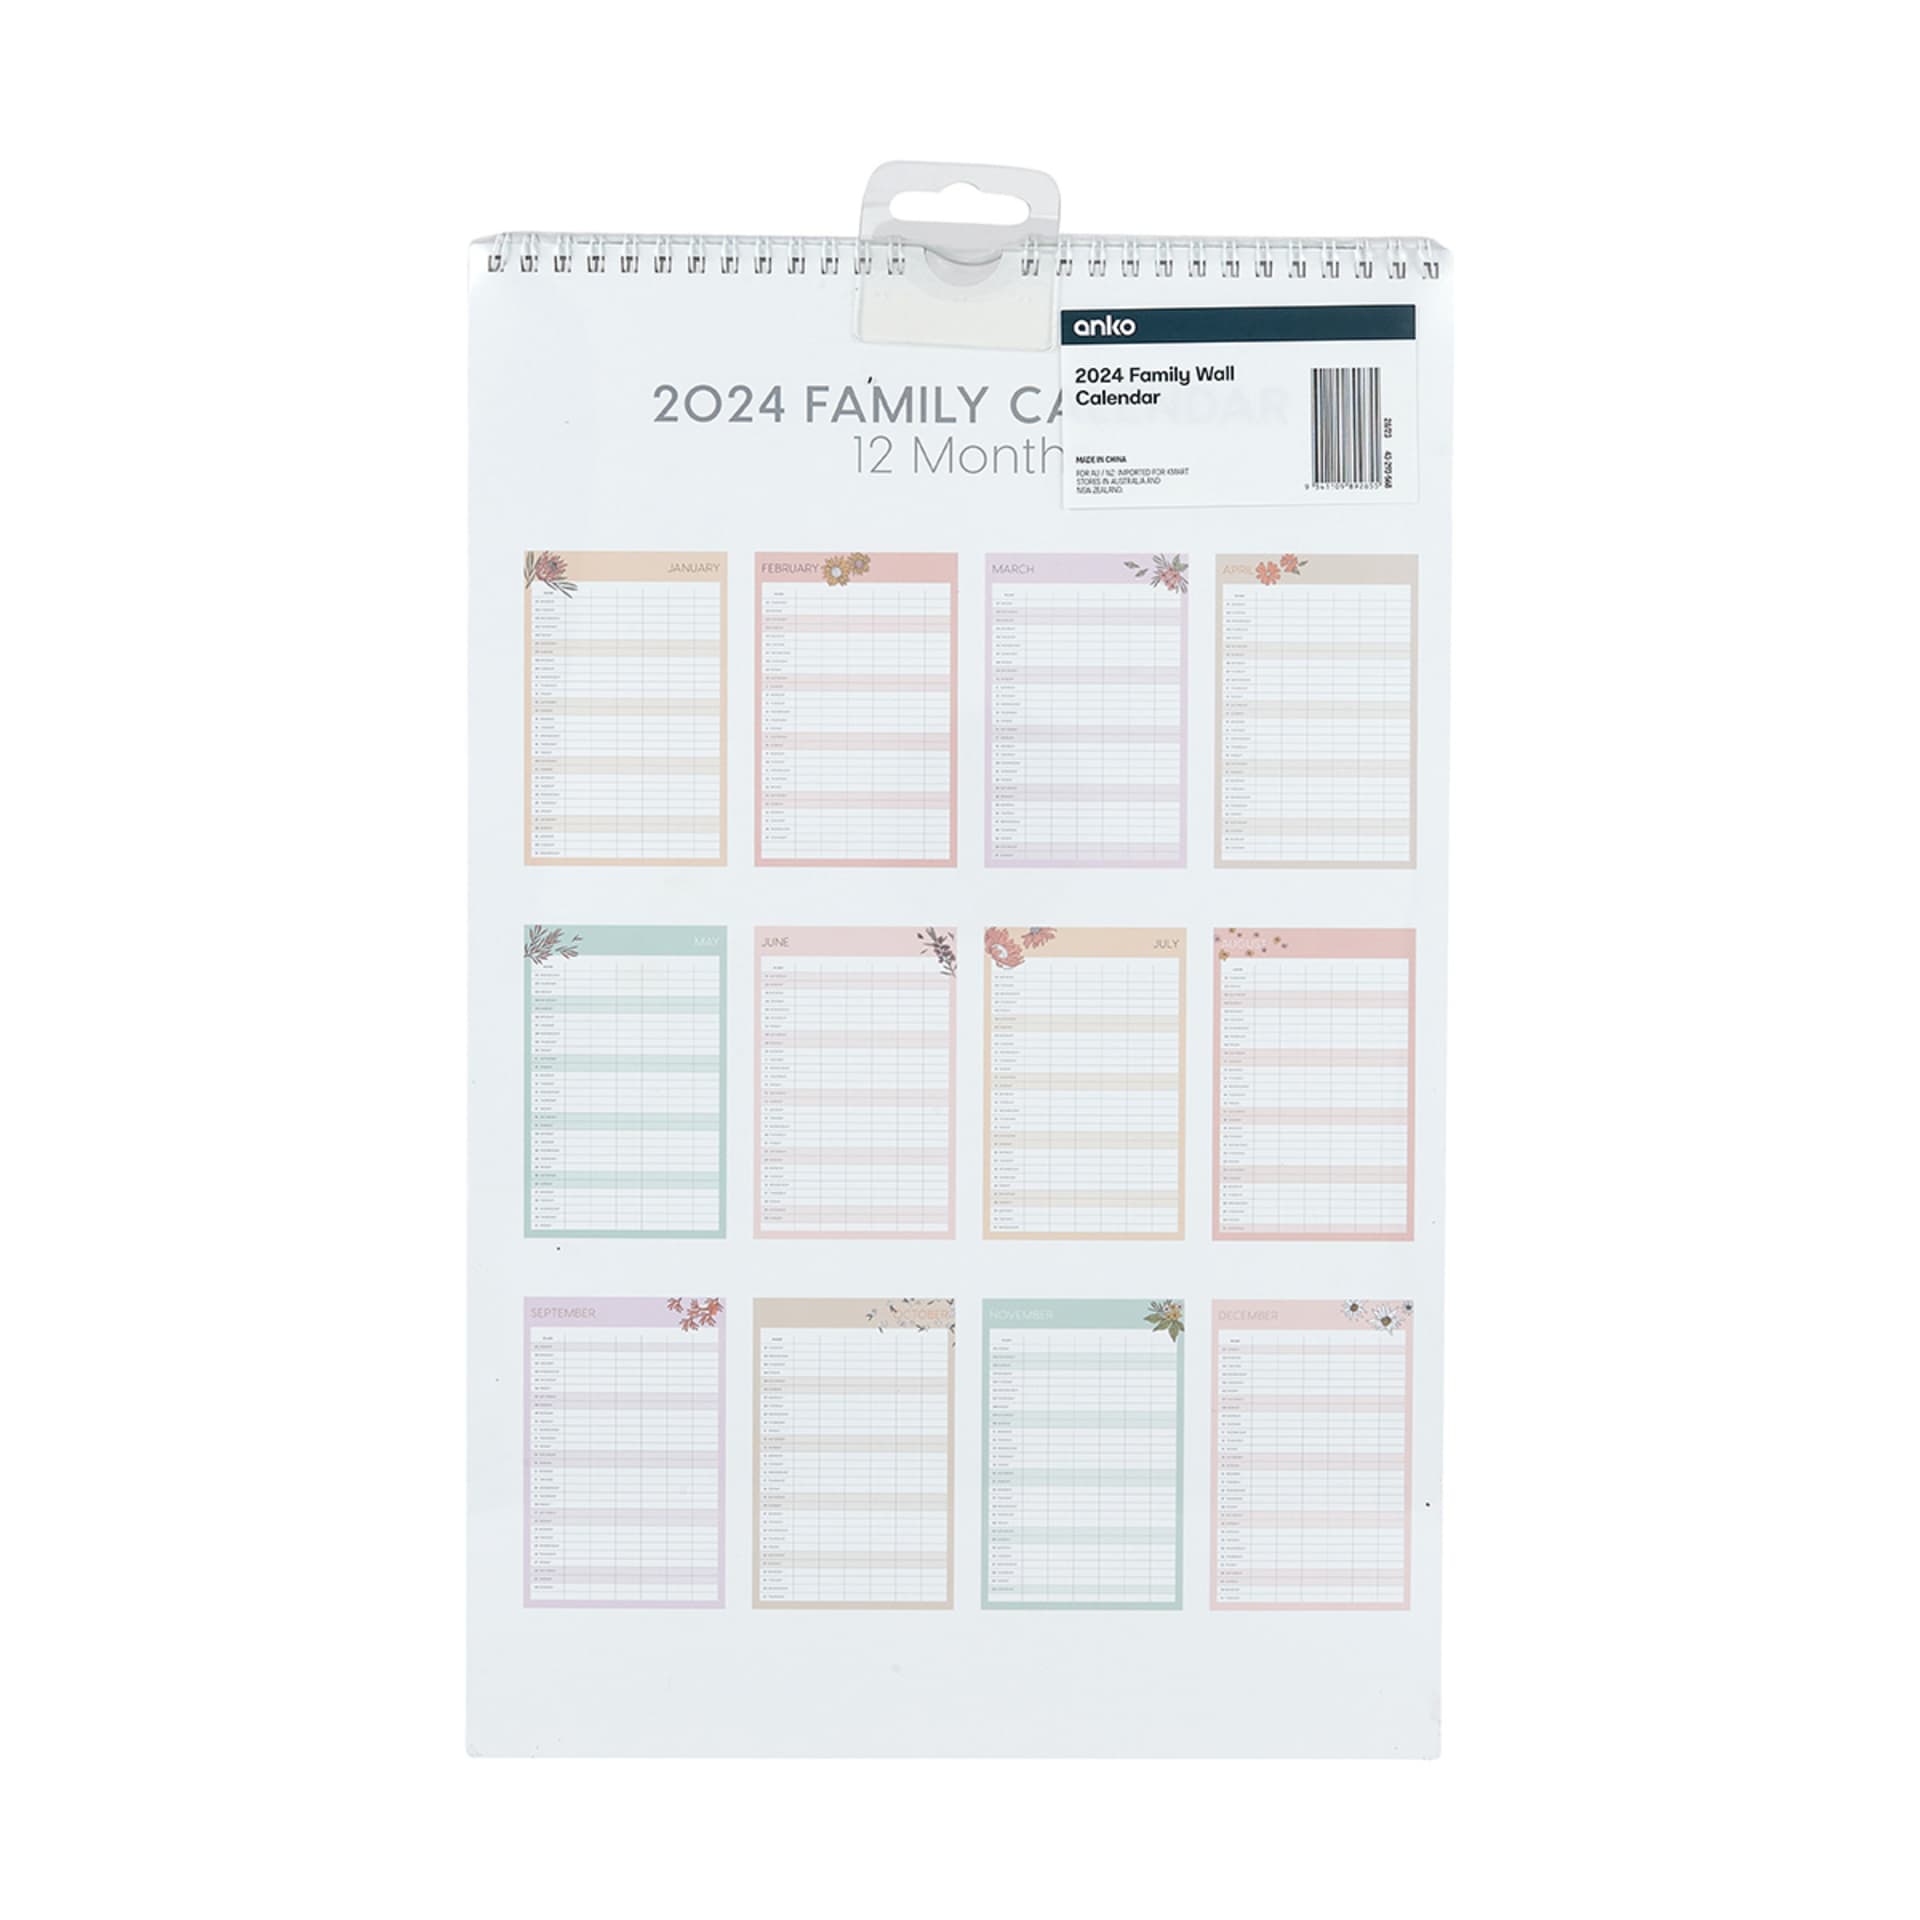 2024 Family Wall Calendar Kmart